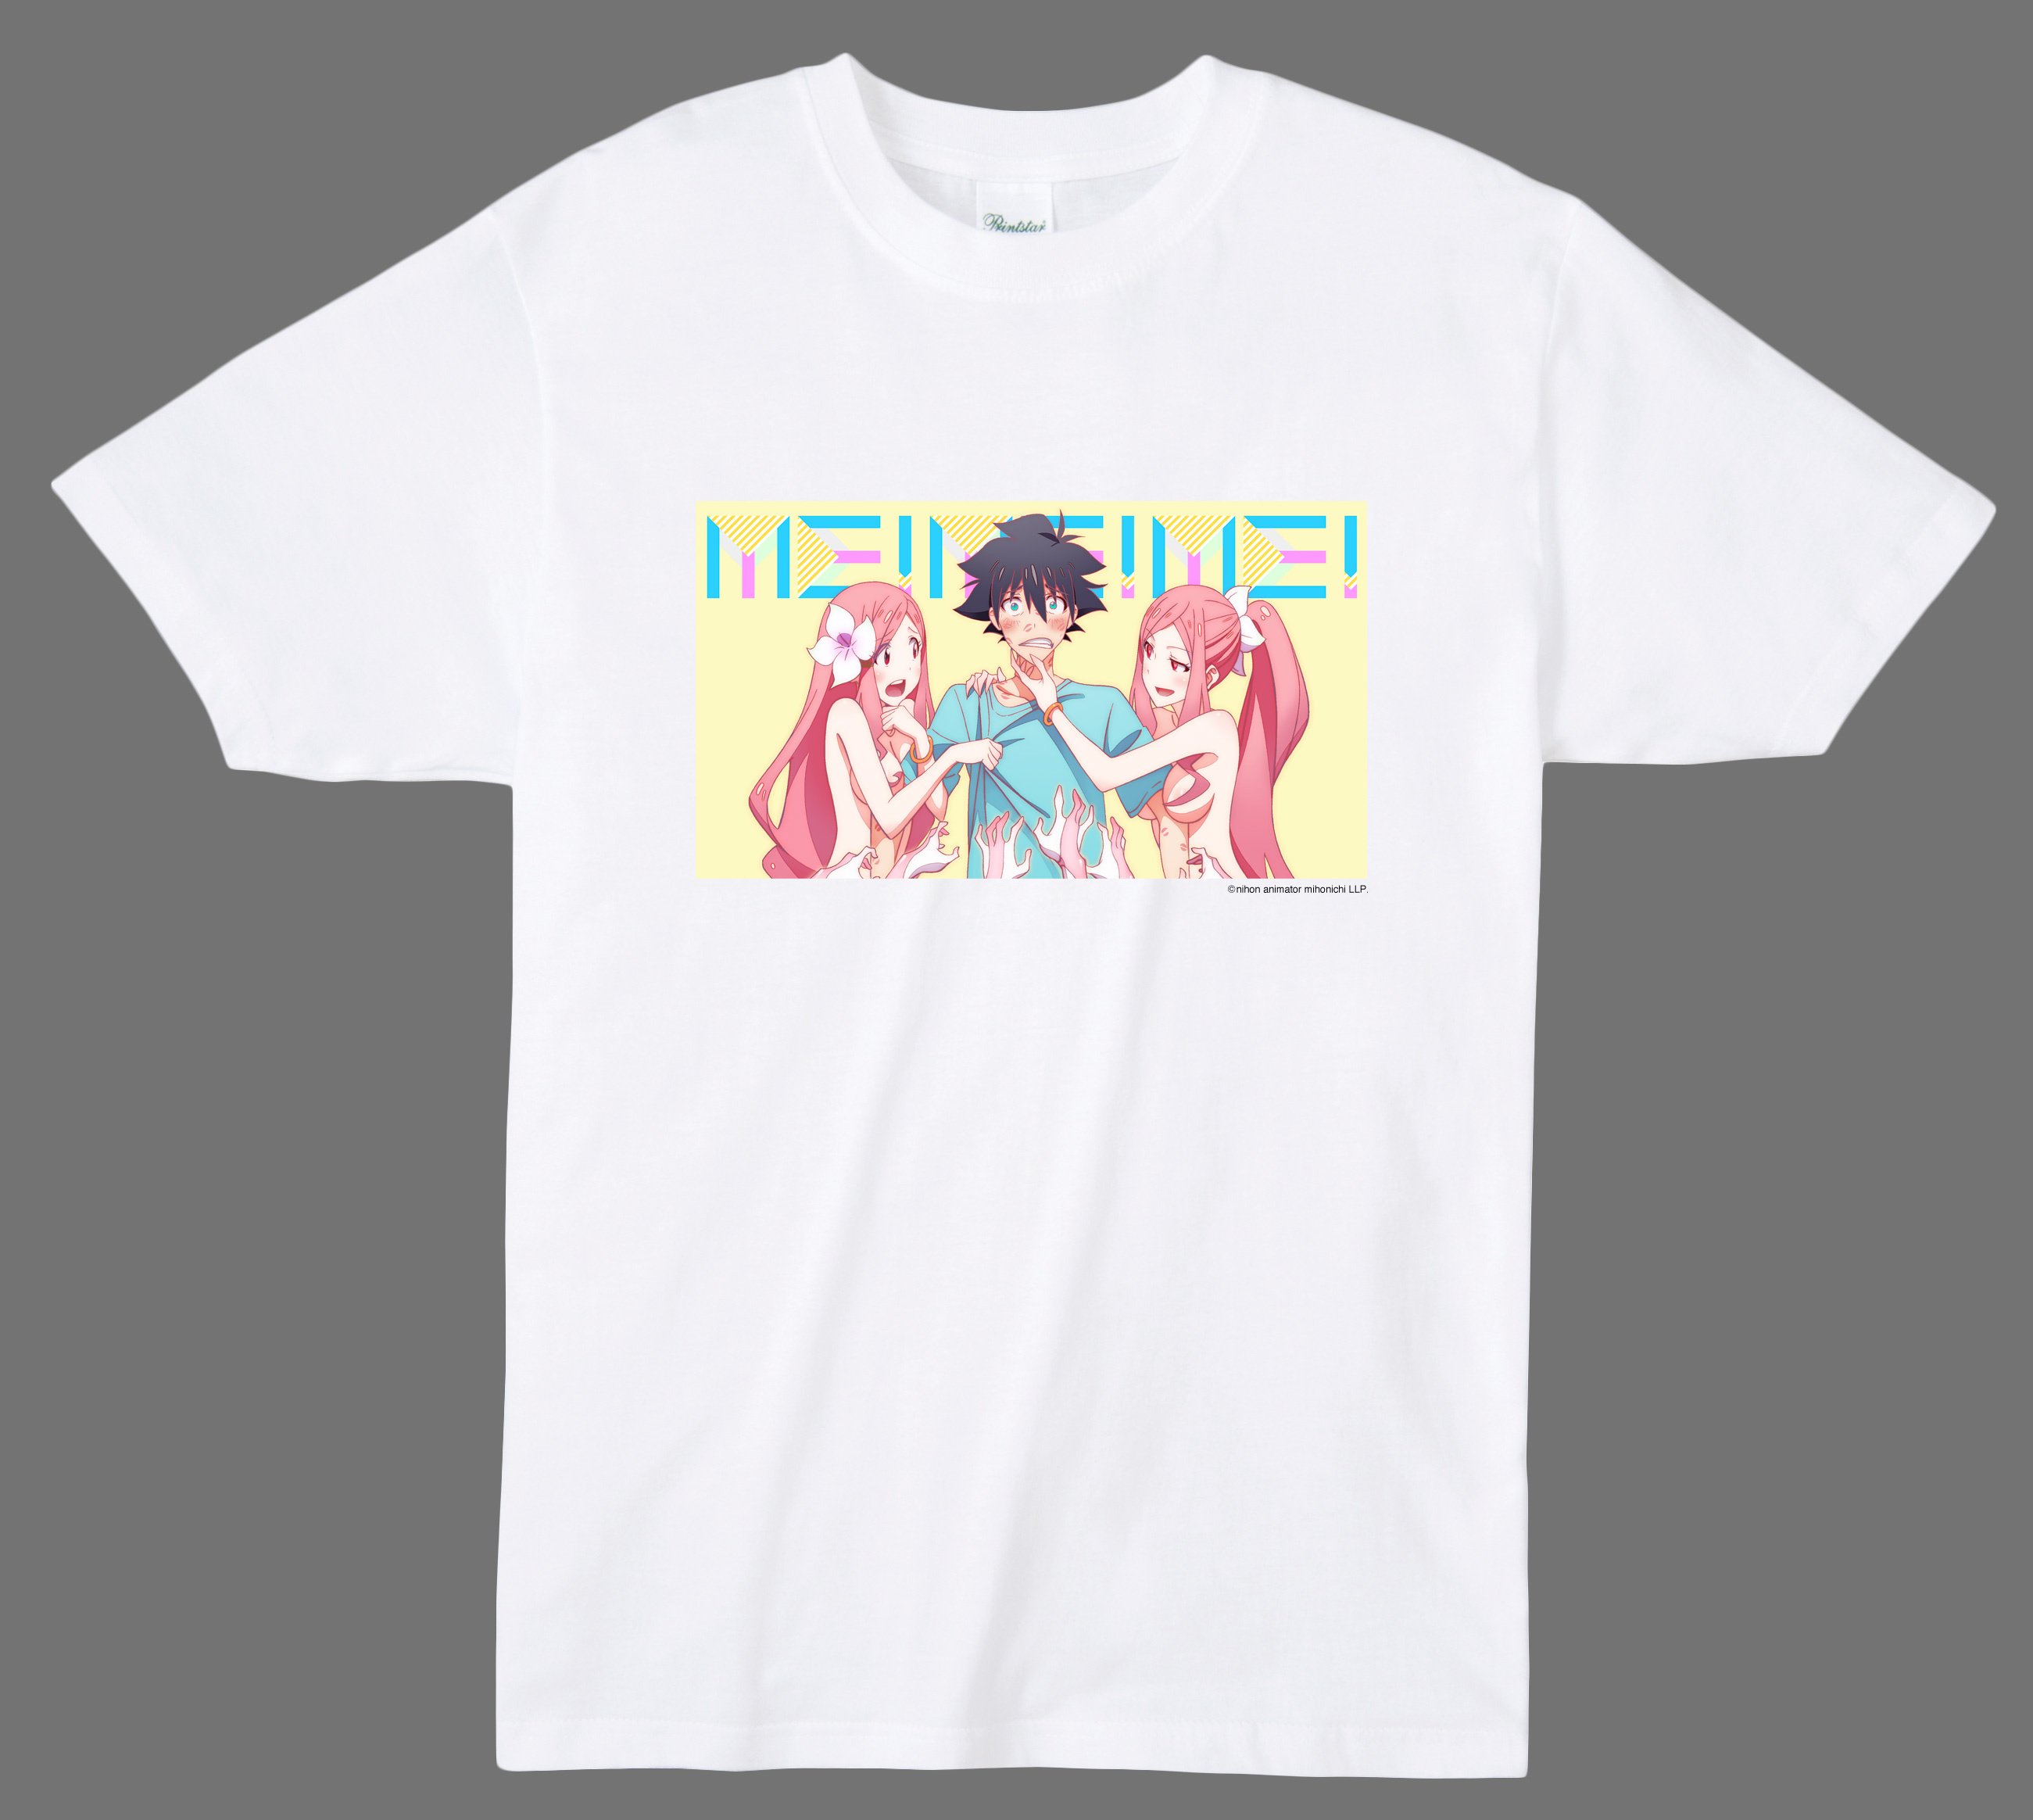 Japan Anima(tor) Expo T-Shirt #3: Me!Me!Me! - Tokyo Otaku Mode (TOM)